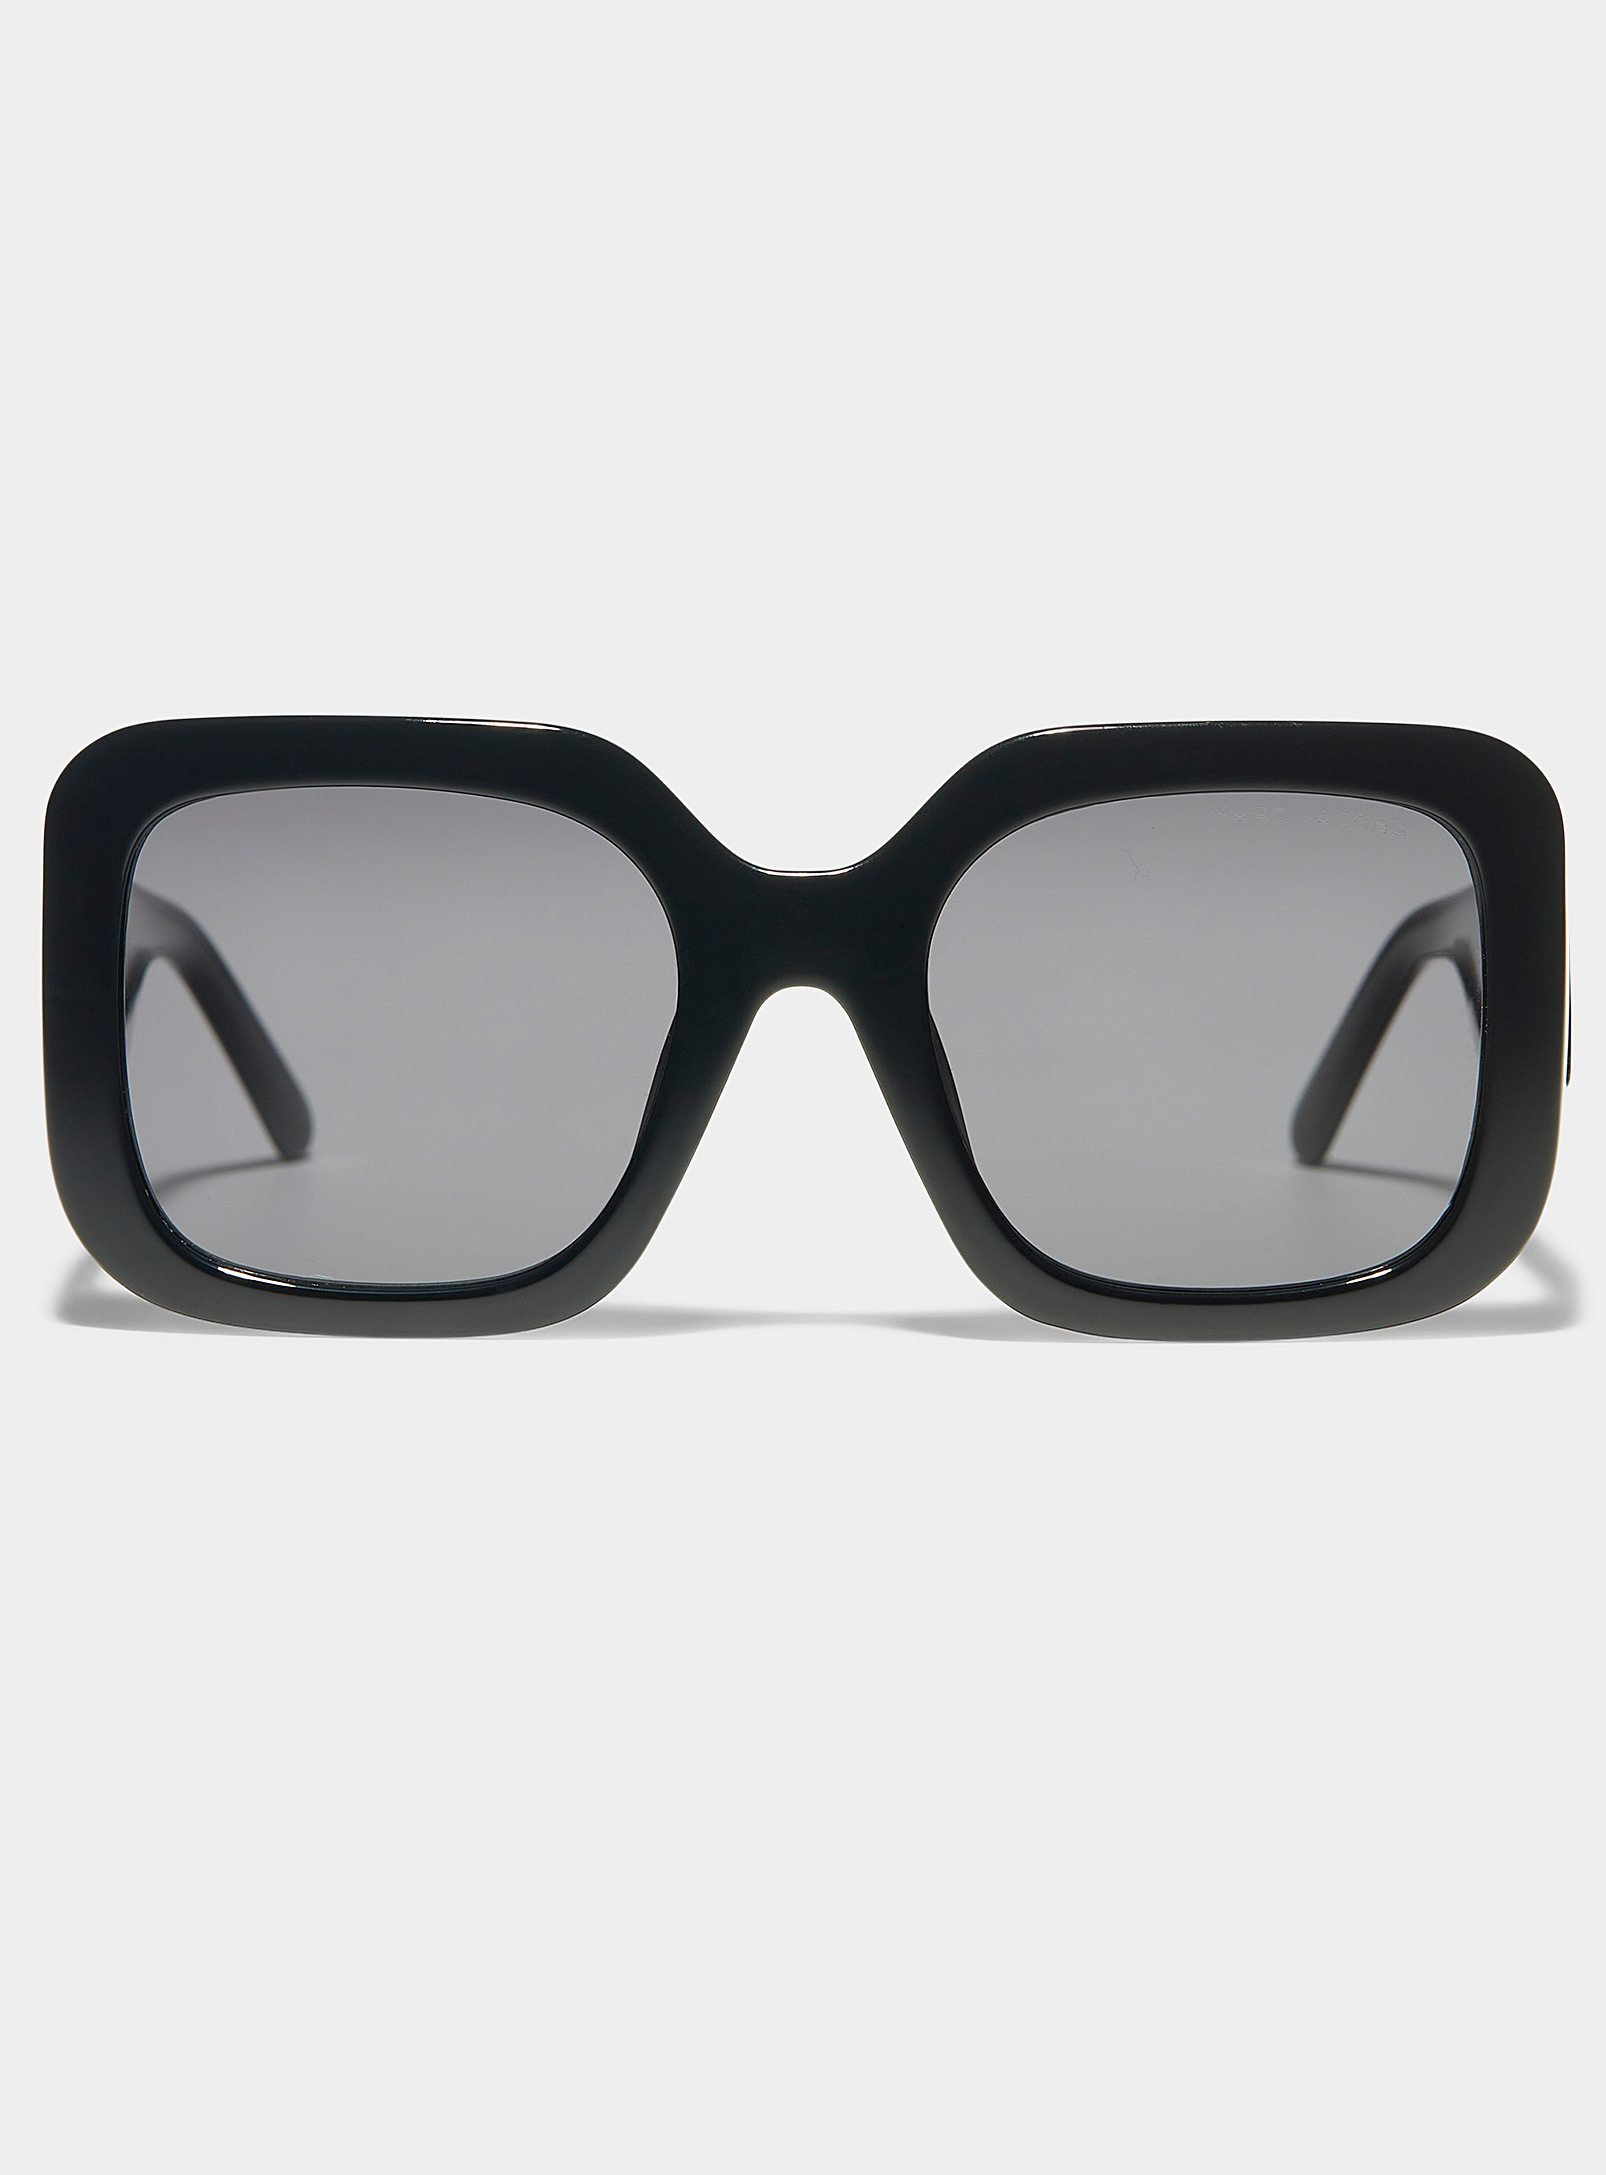 Marc Jacobs Shiny Black Large Square Sunglasses